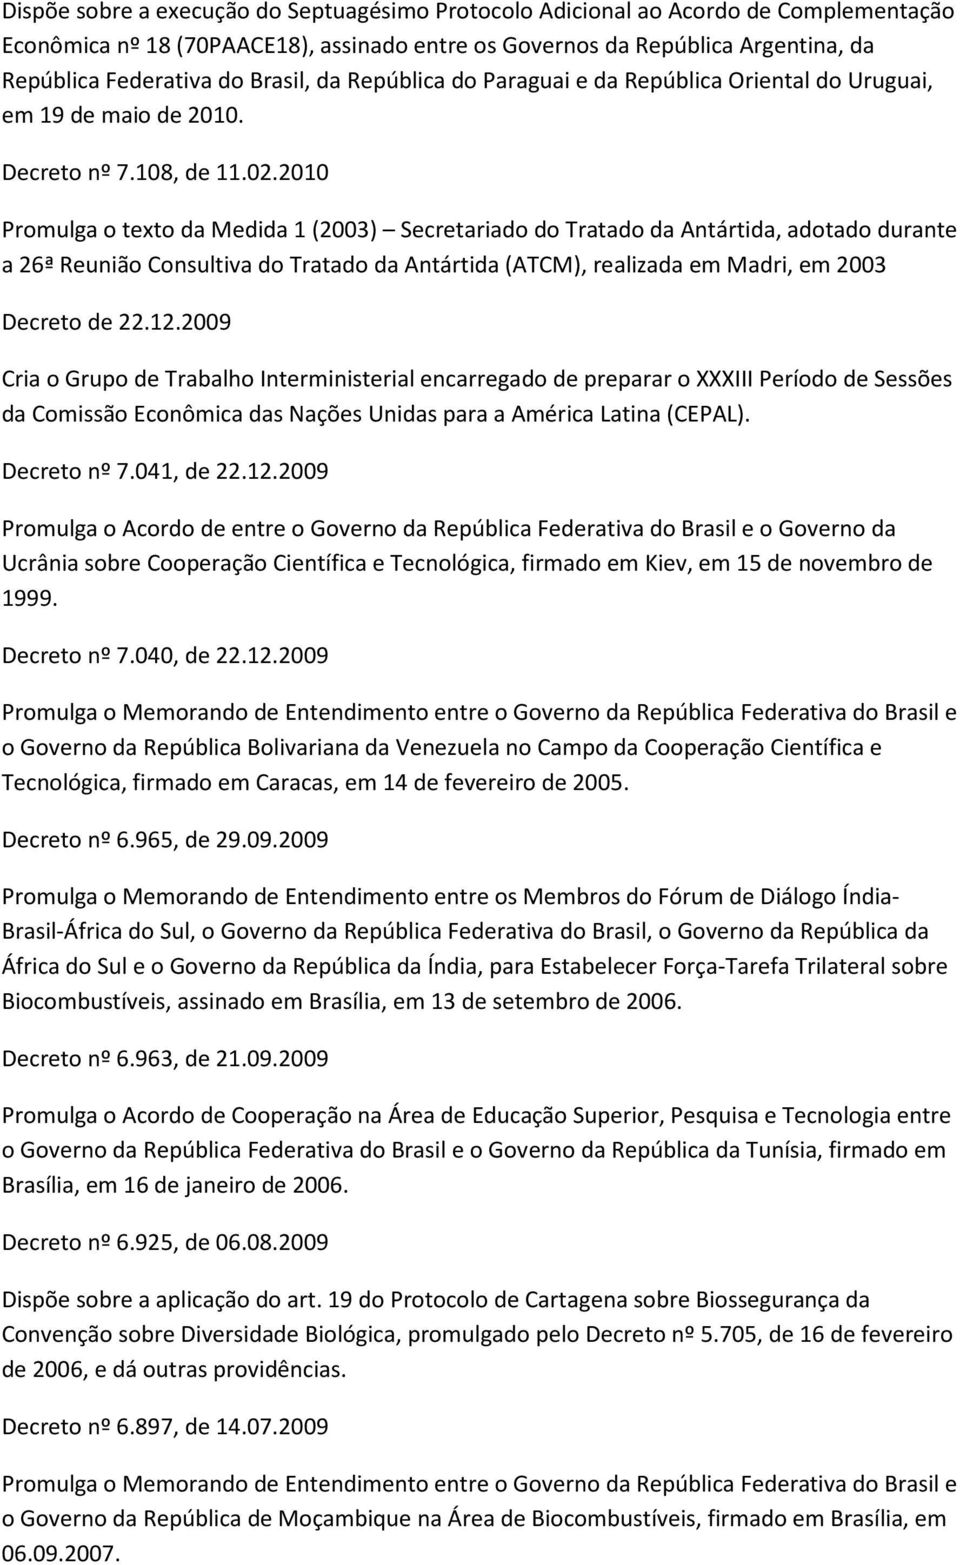 2010 Promulga o texto da Medida 1 (2003) Secretariado do Tratado da Antártida, adotado durante a 26ª Reunião Consultiva do Tratado da Antártida (ATCM), realizada em Madri, em 2003 Decreto de 22.12.